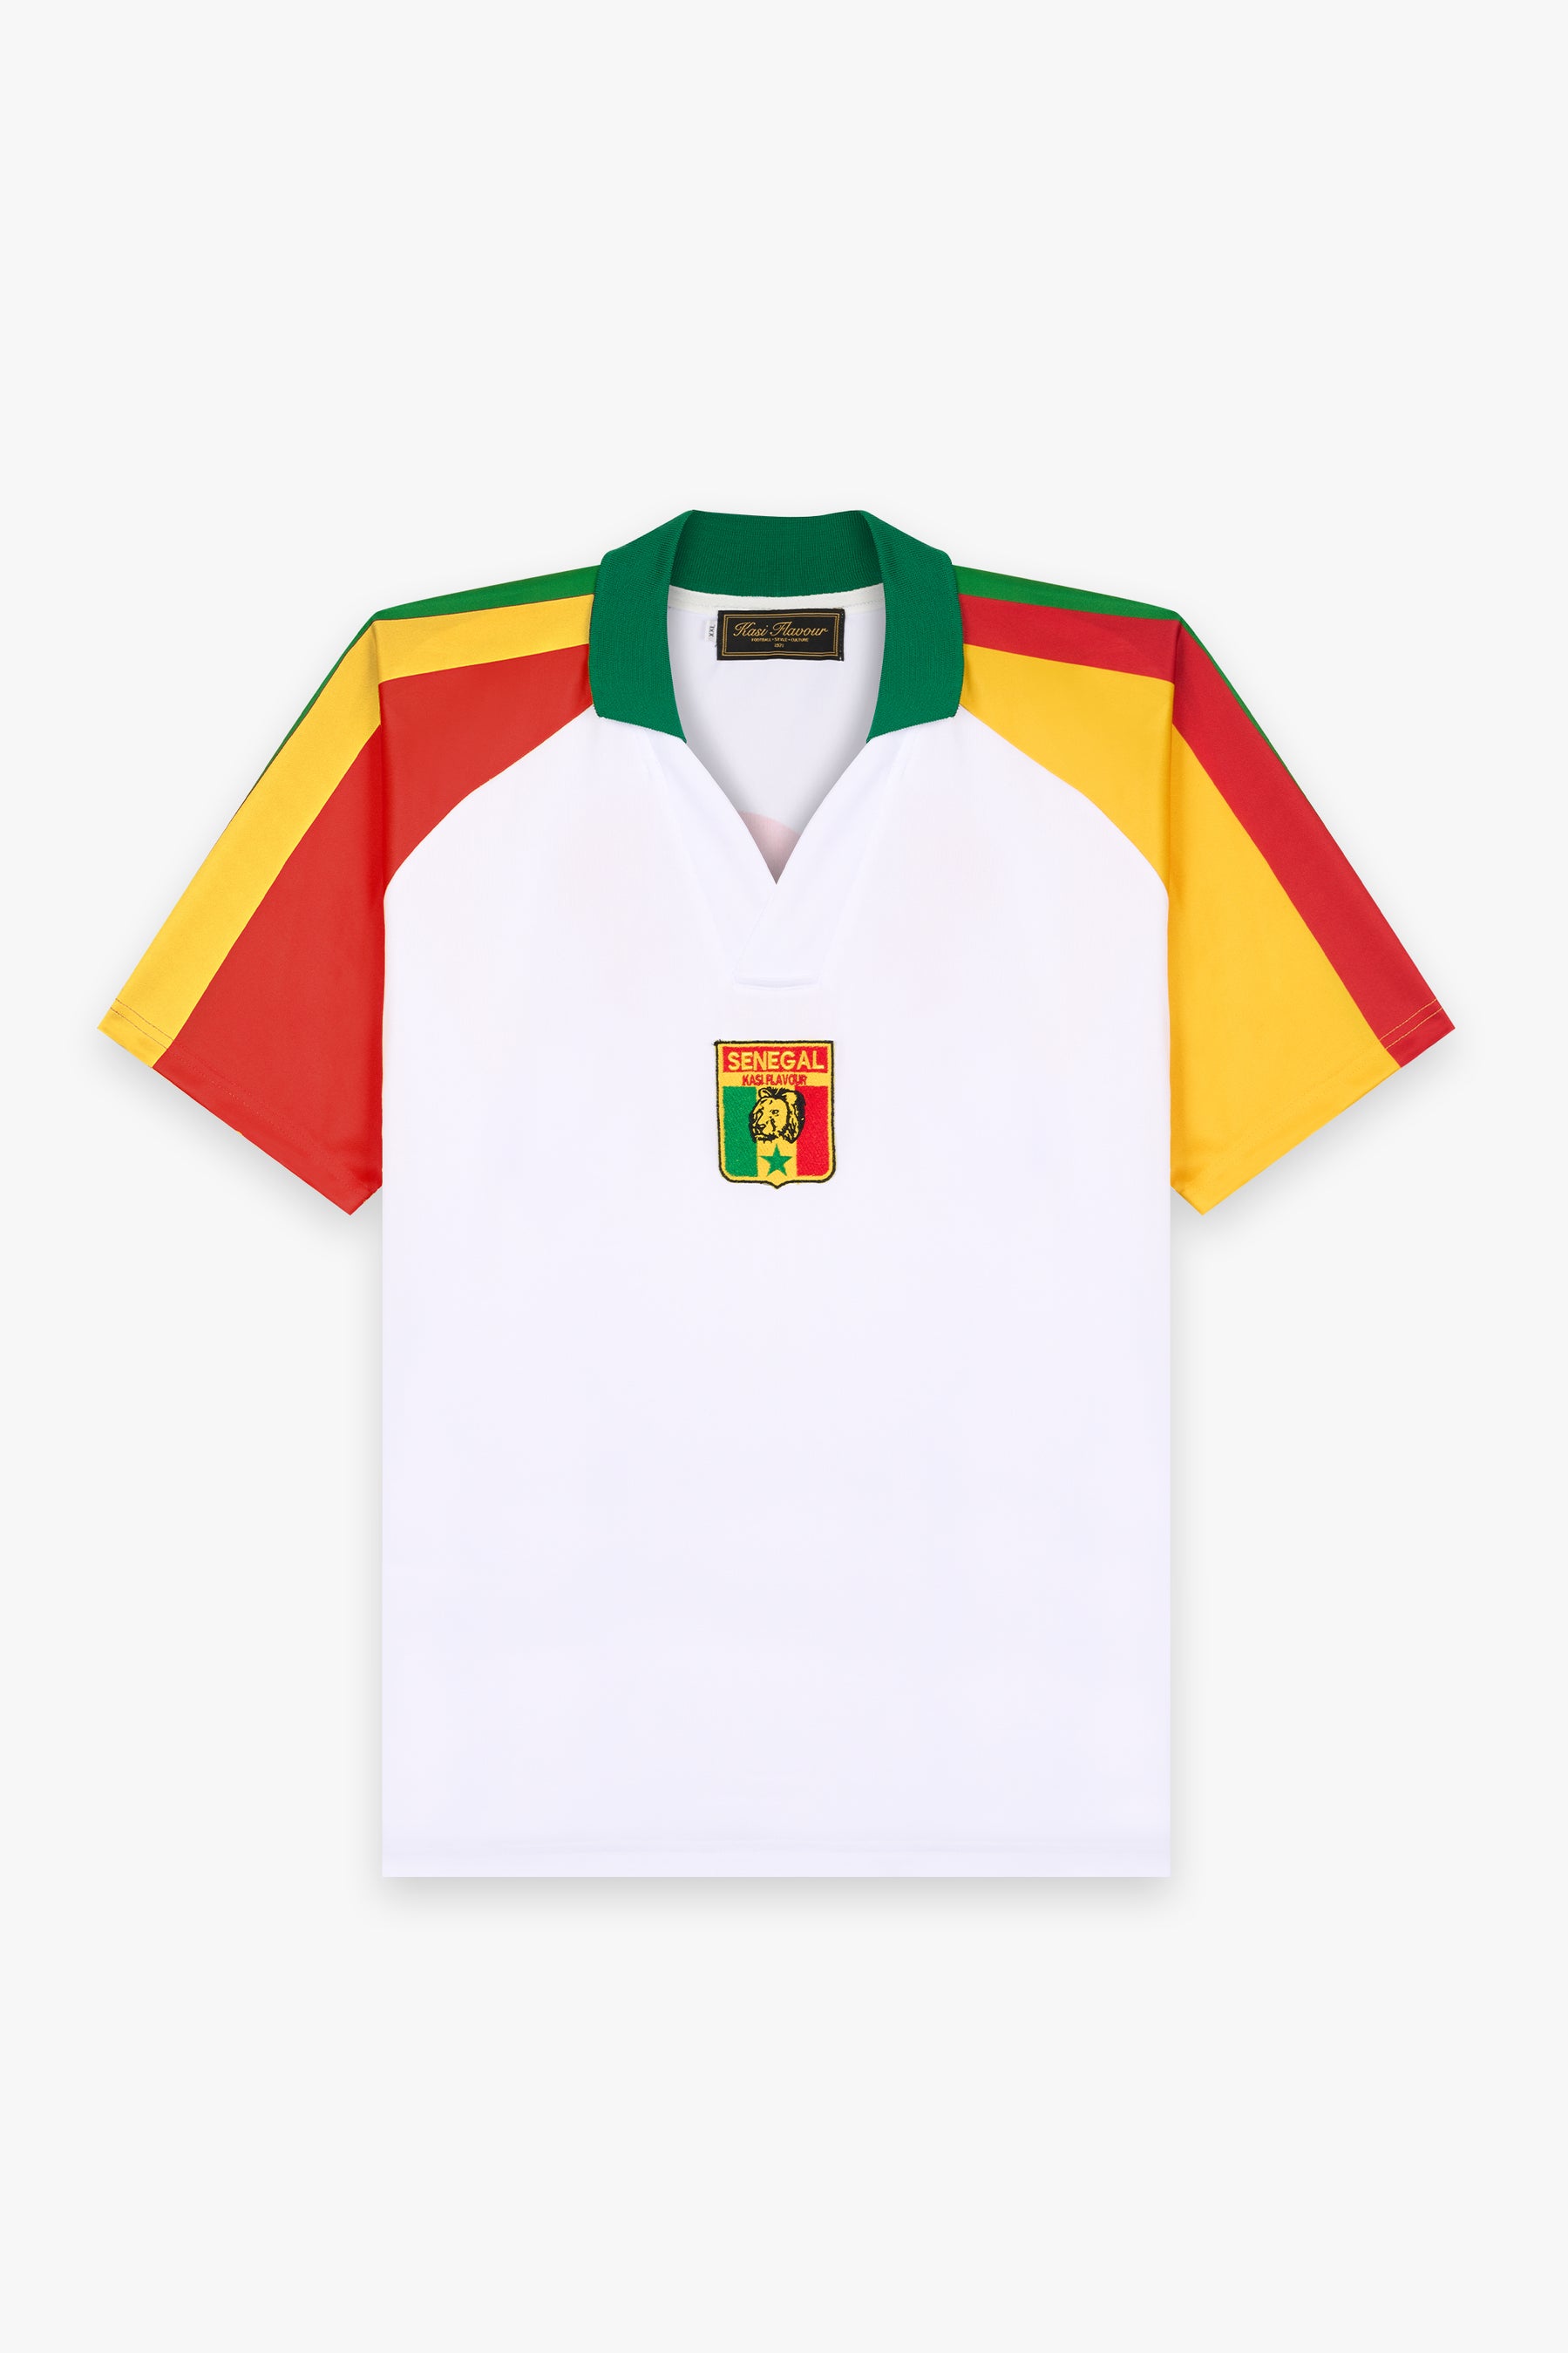 Fadiga jersey Senegal